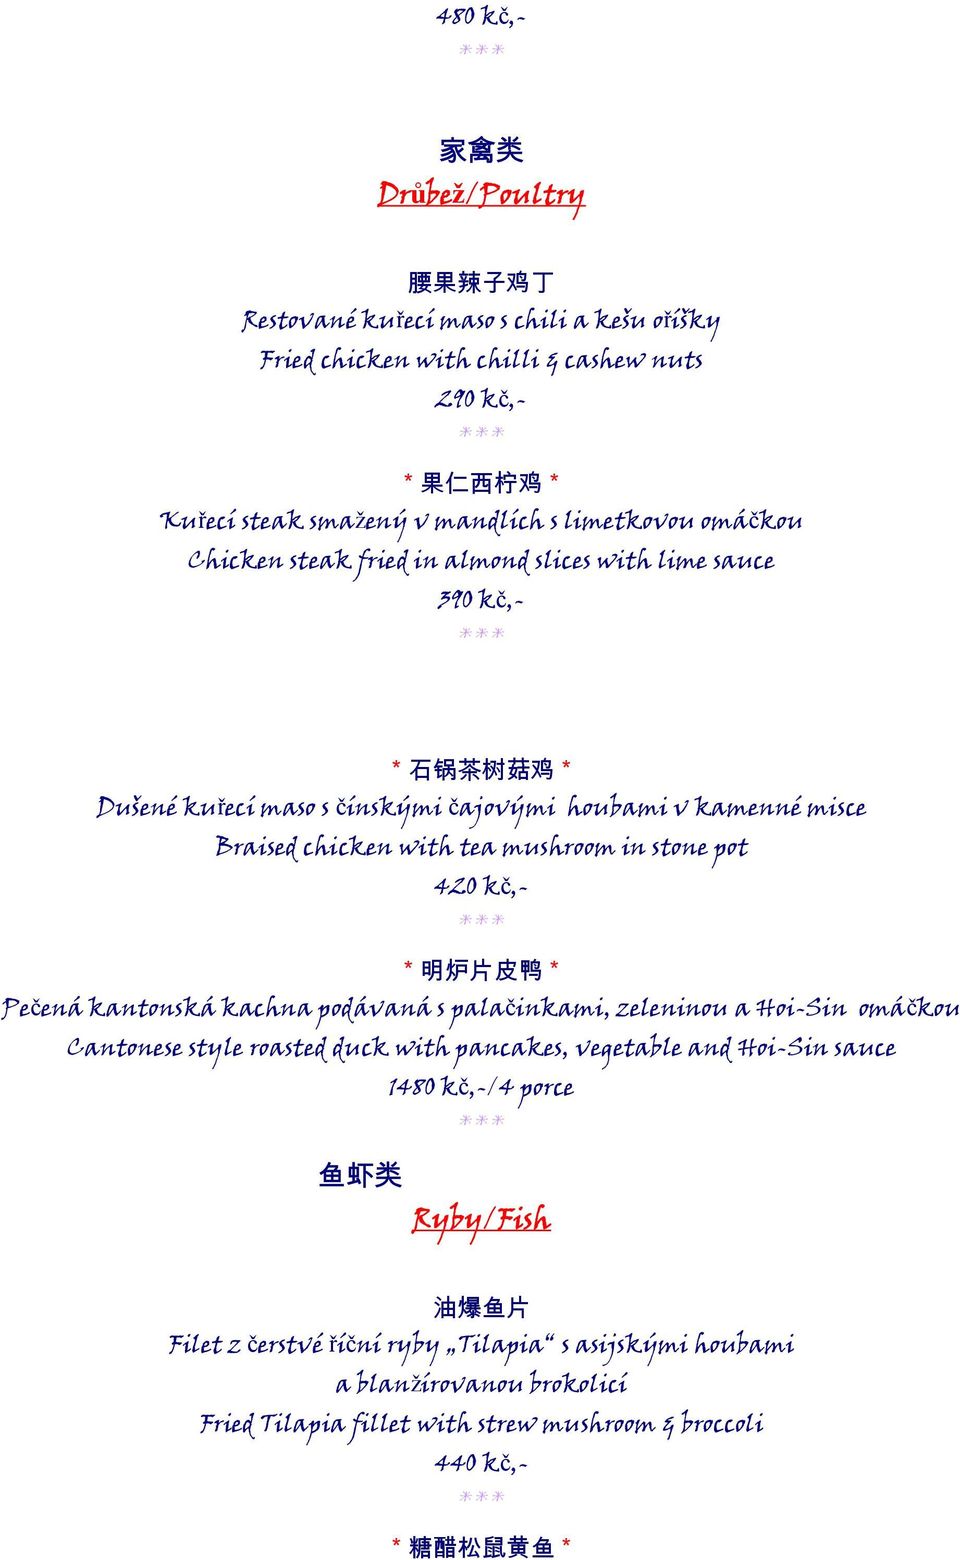 stone pot 420 kč,- * 明炉片皮鸭 * Pečená kantonská kachna podávaná s palačinkami, zeleninou a Hoi-Sin omáčkou Cantonese style roasted duck with pancakes, vegetable and Hoi-Sin sauce 1480